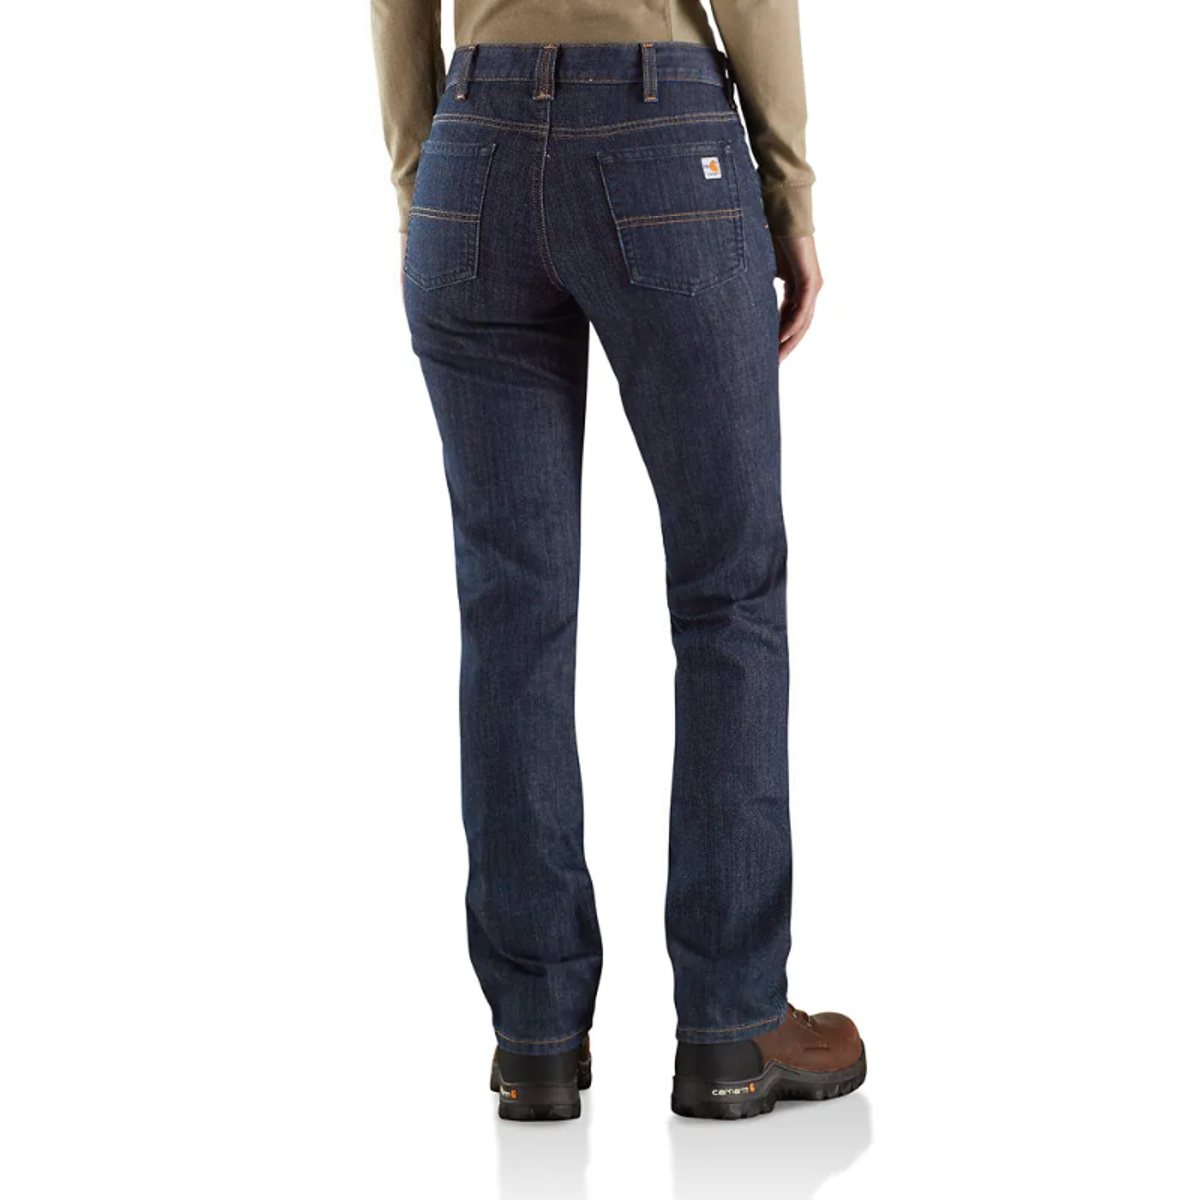 Carhartt Women's FR Rugged Flex Jeans in Premium Dark